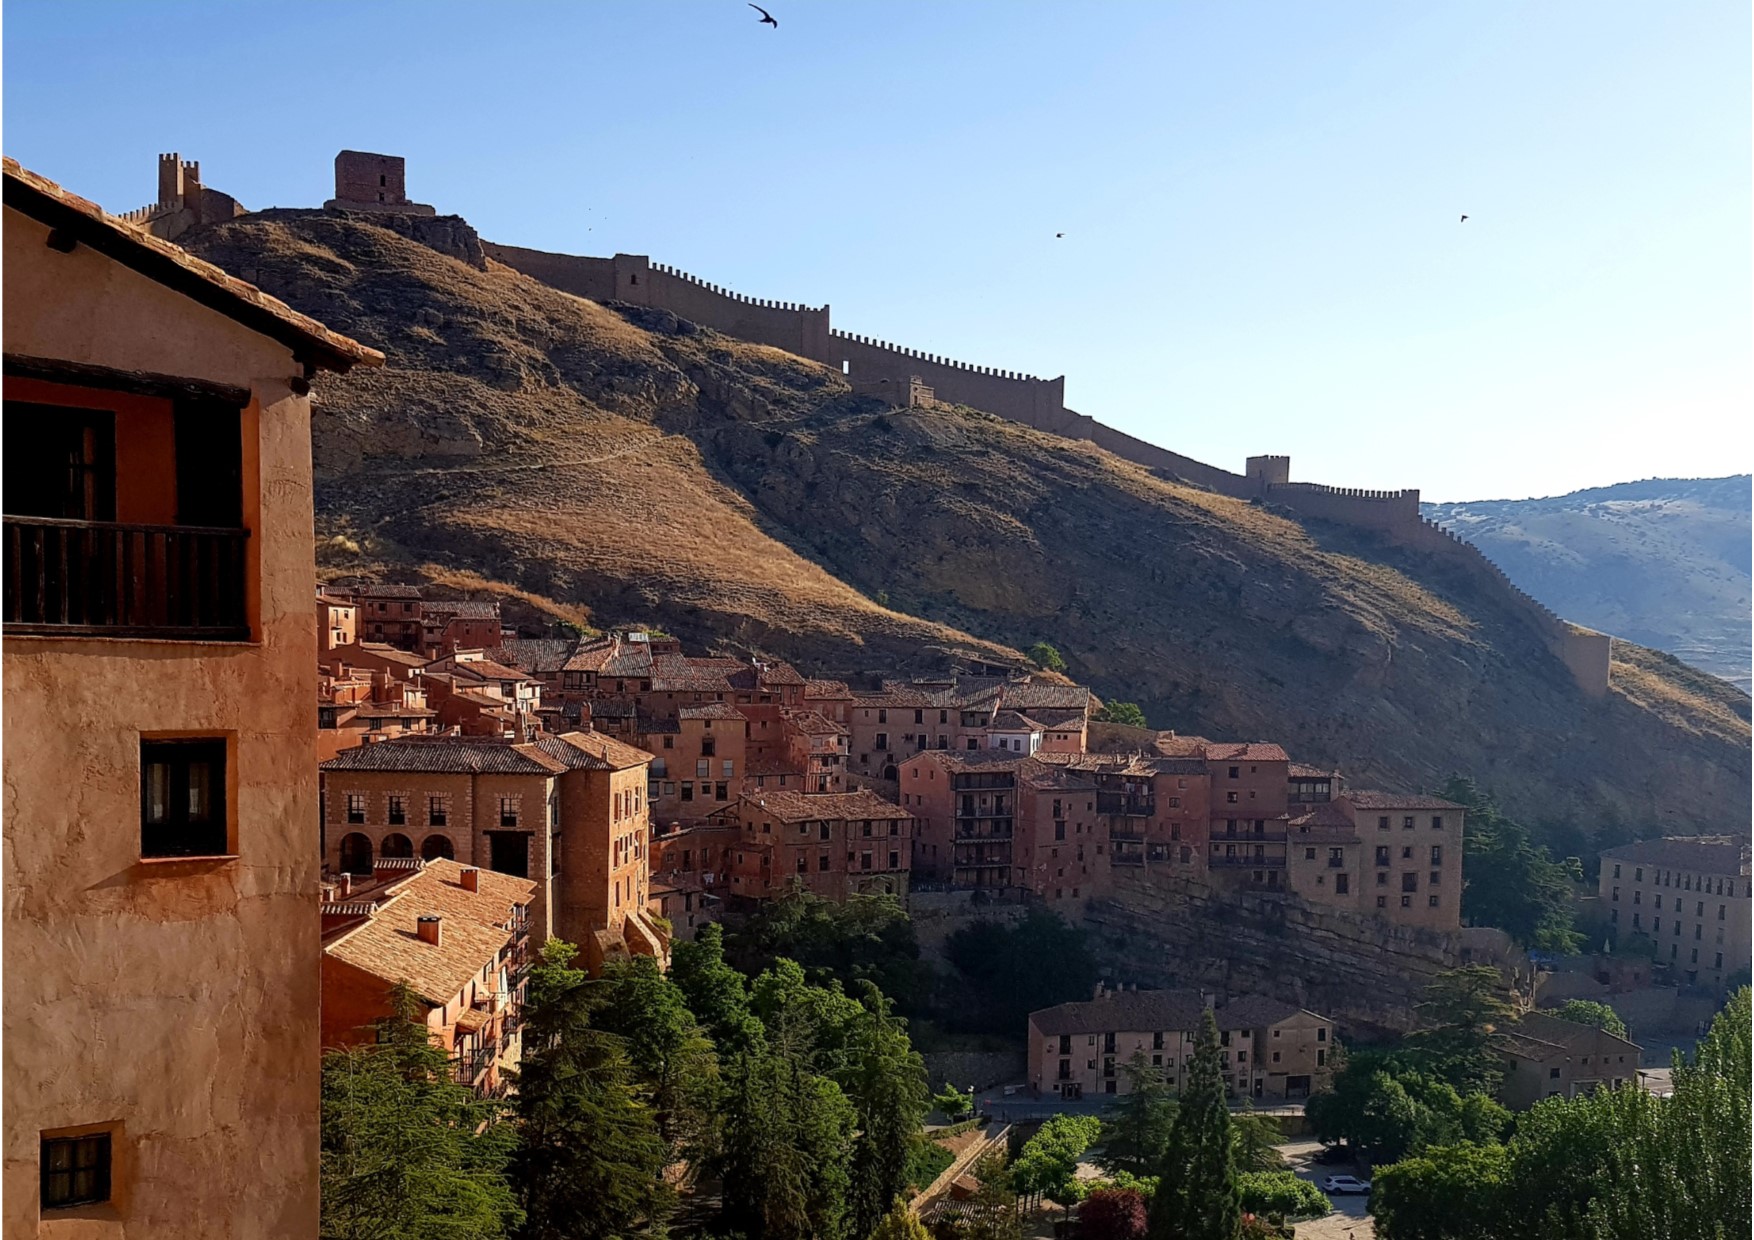 #Albarracín… #BienMerece #VisitaGuiada con #AndadorVisitasGuiadas…te esperamos!